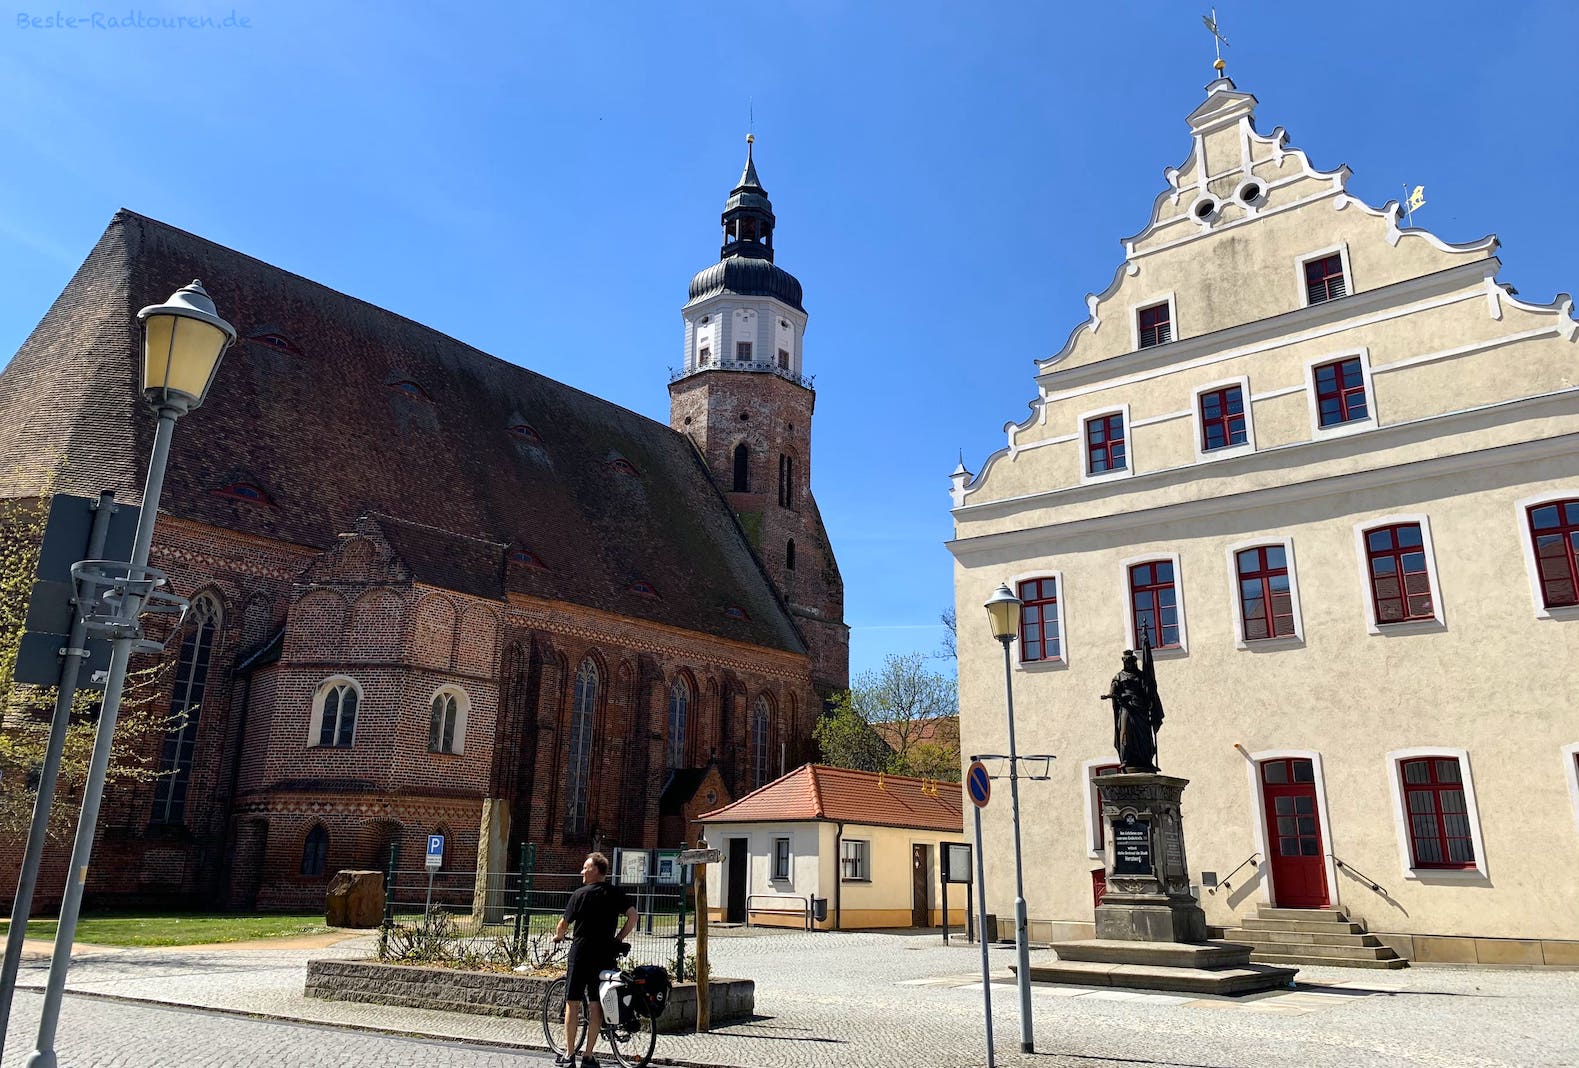 Foto vom Tour-Brandenburg-Radweg aus: Rathaus und St.-Marien-Kirche am Marktplatz von Herzberg, Elbe-Elster